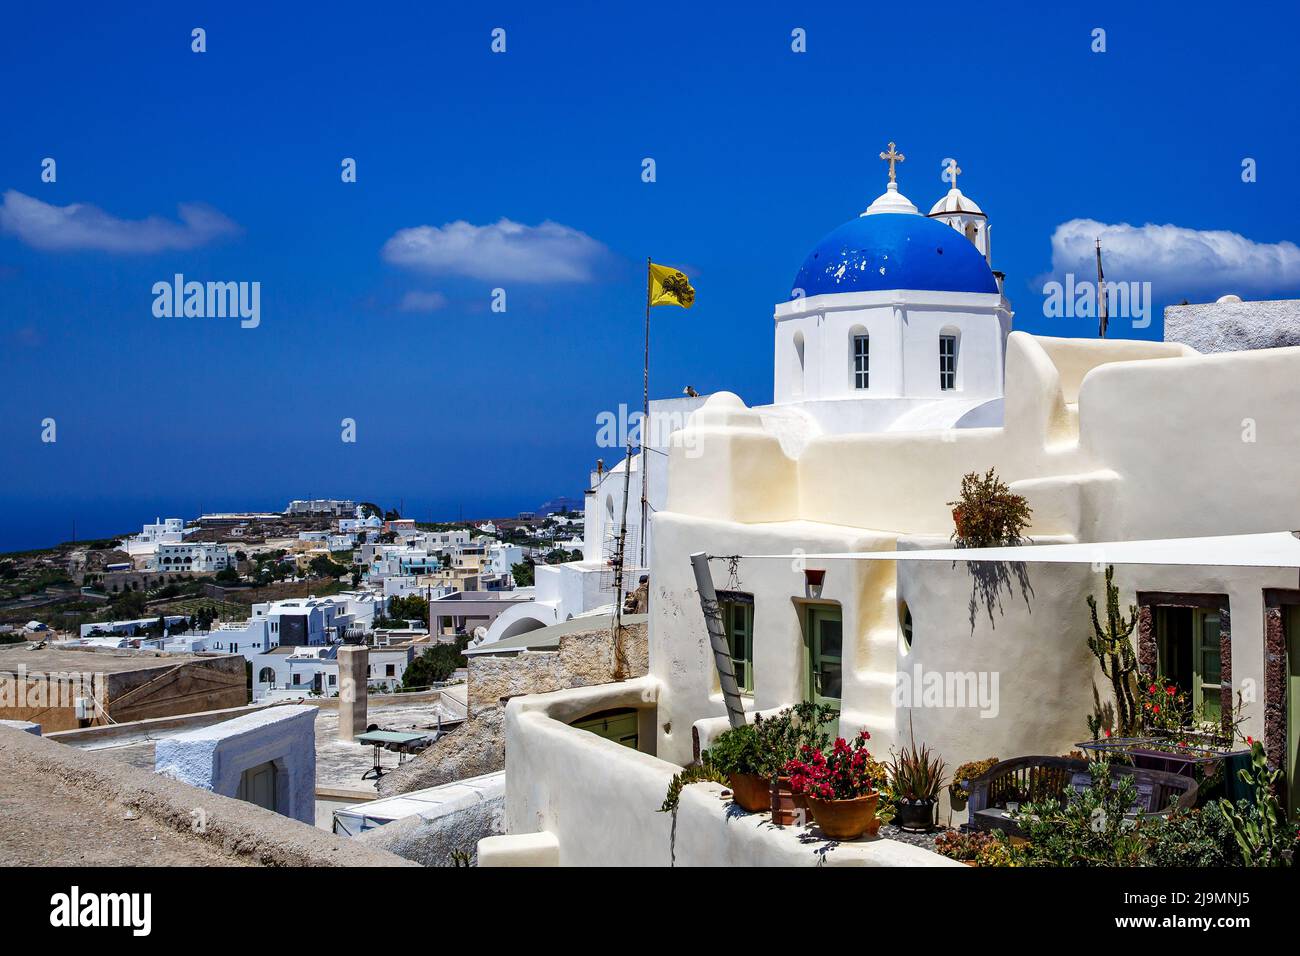 Église blanche avec un dôme bleu sur l'île de Santorini en Grèce. Soleil d'été chaud. Banque D'Images